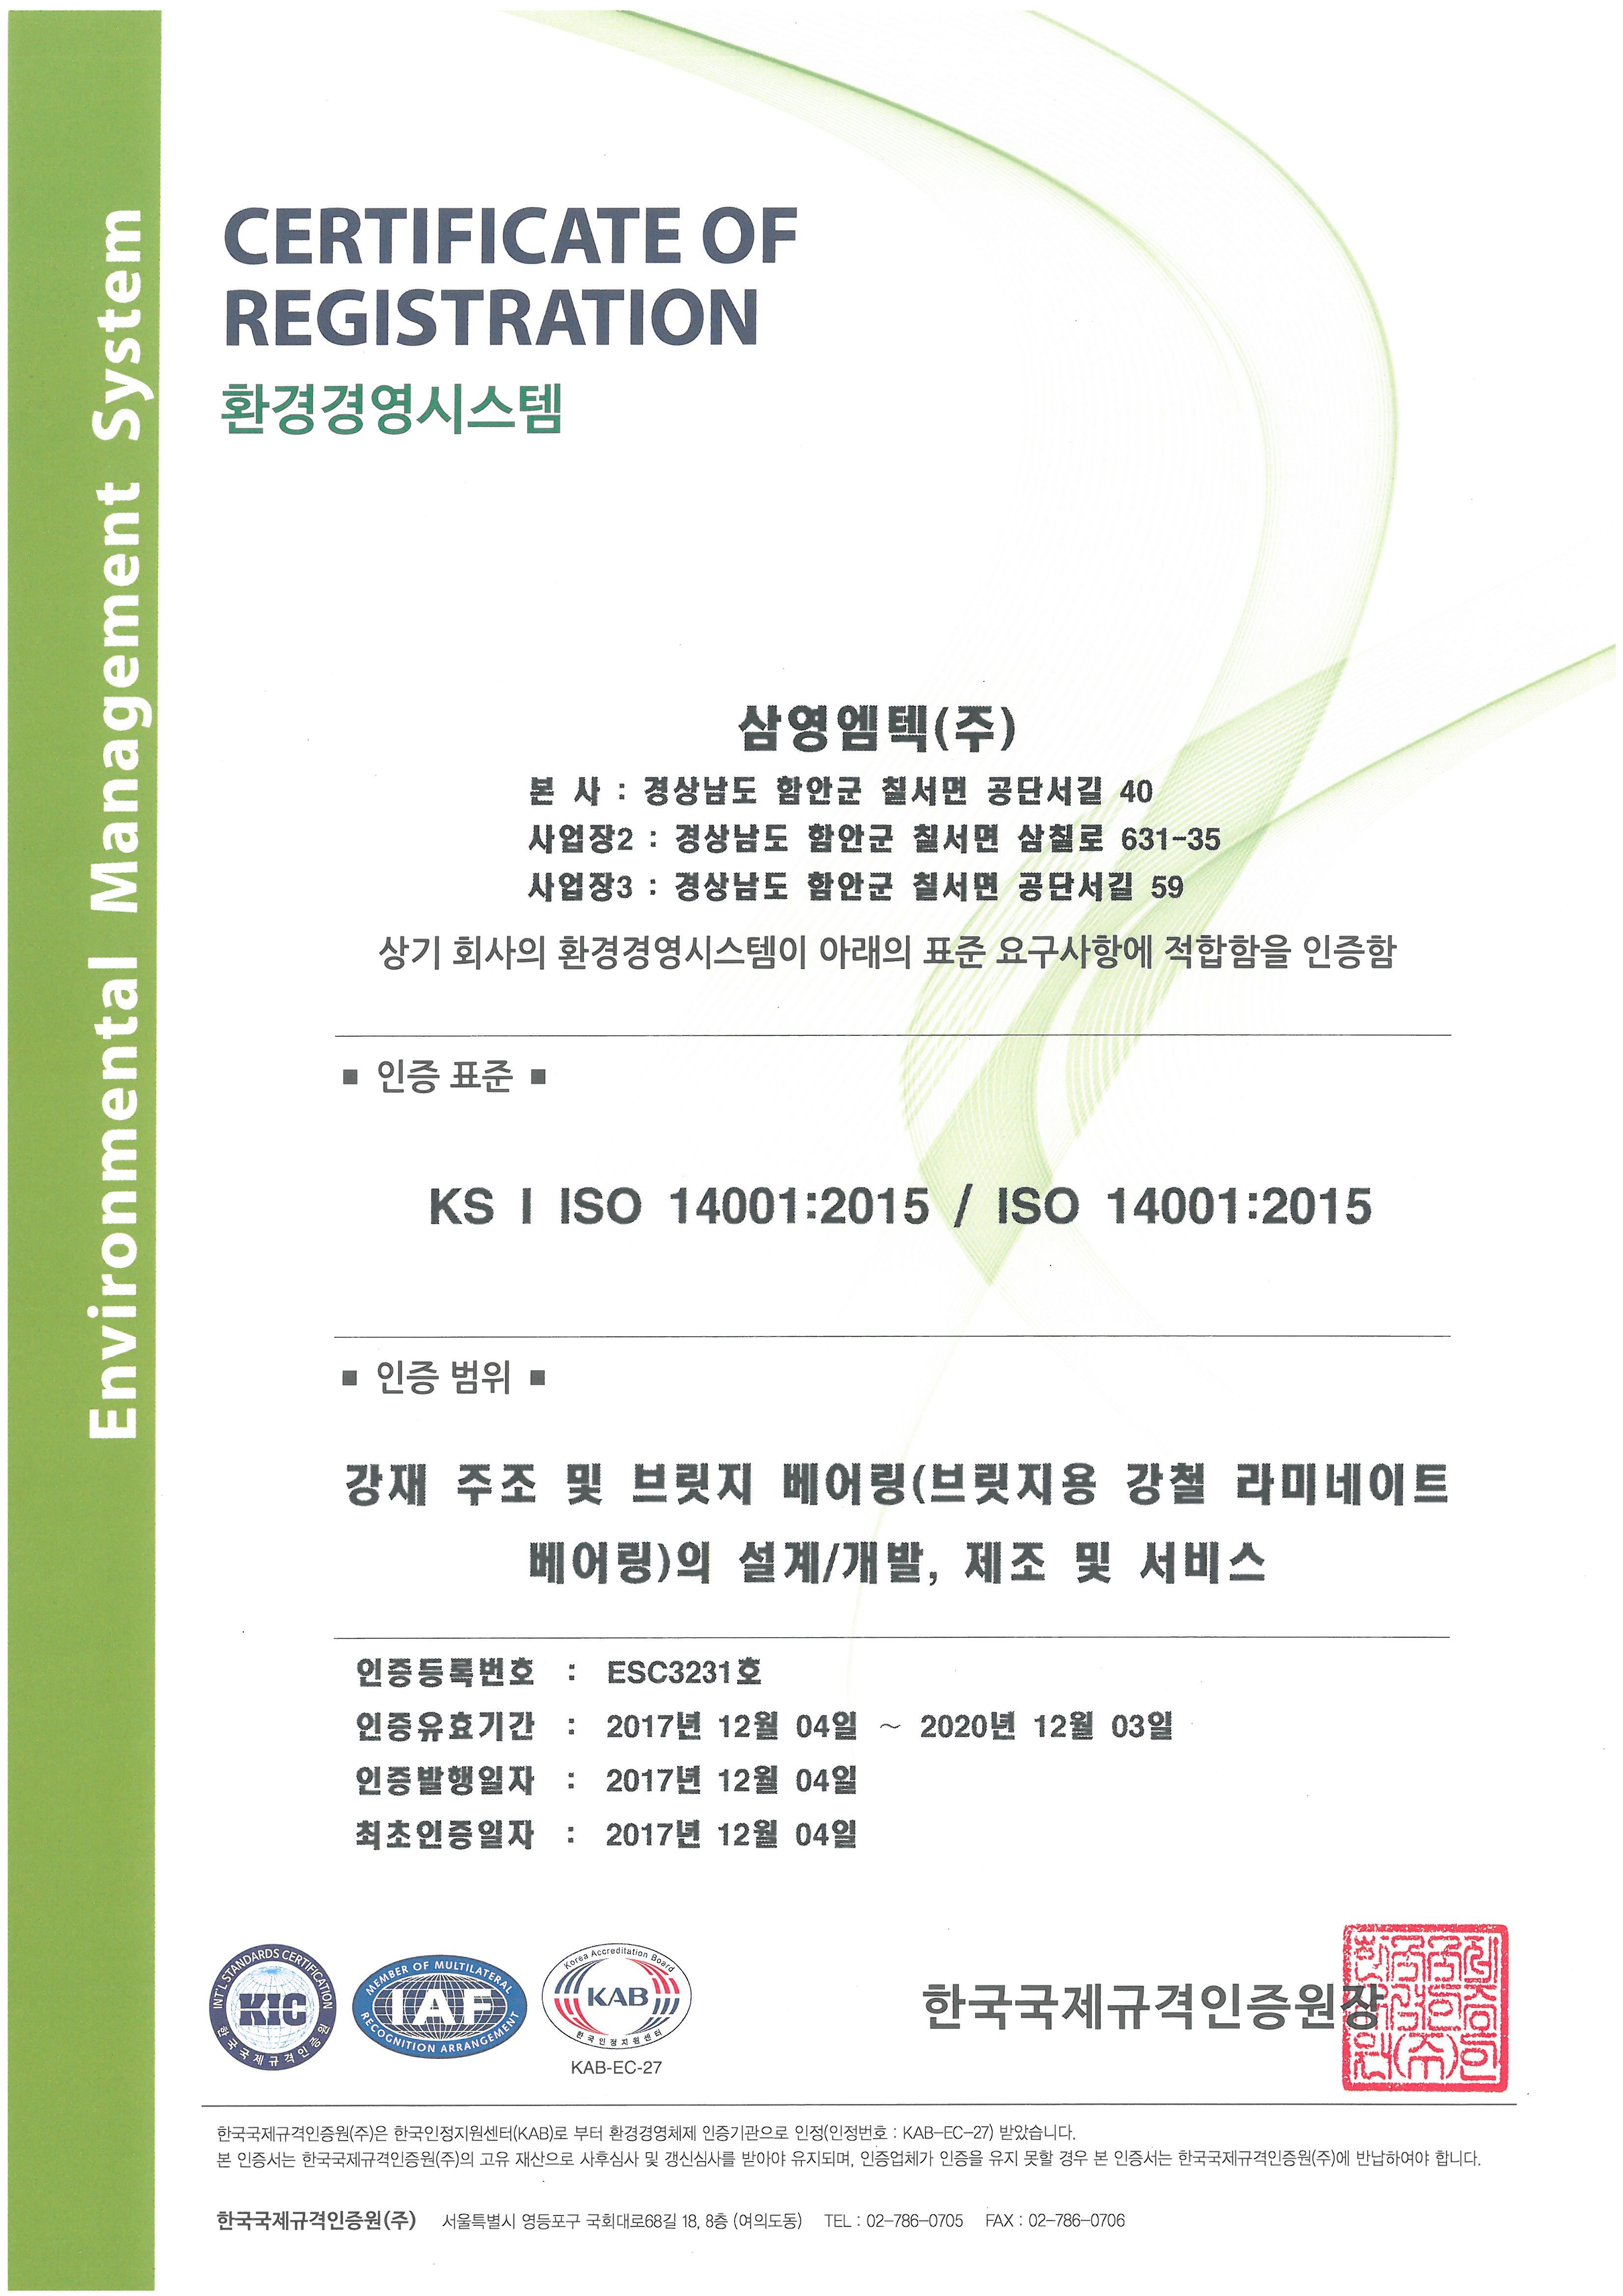 환경(ISO 14001), 안전/보건(OHSAS 18001) 인증서 획득